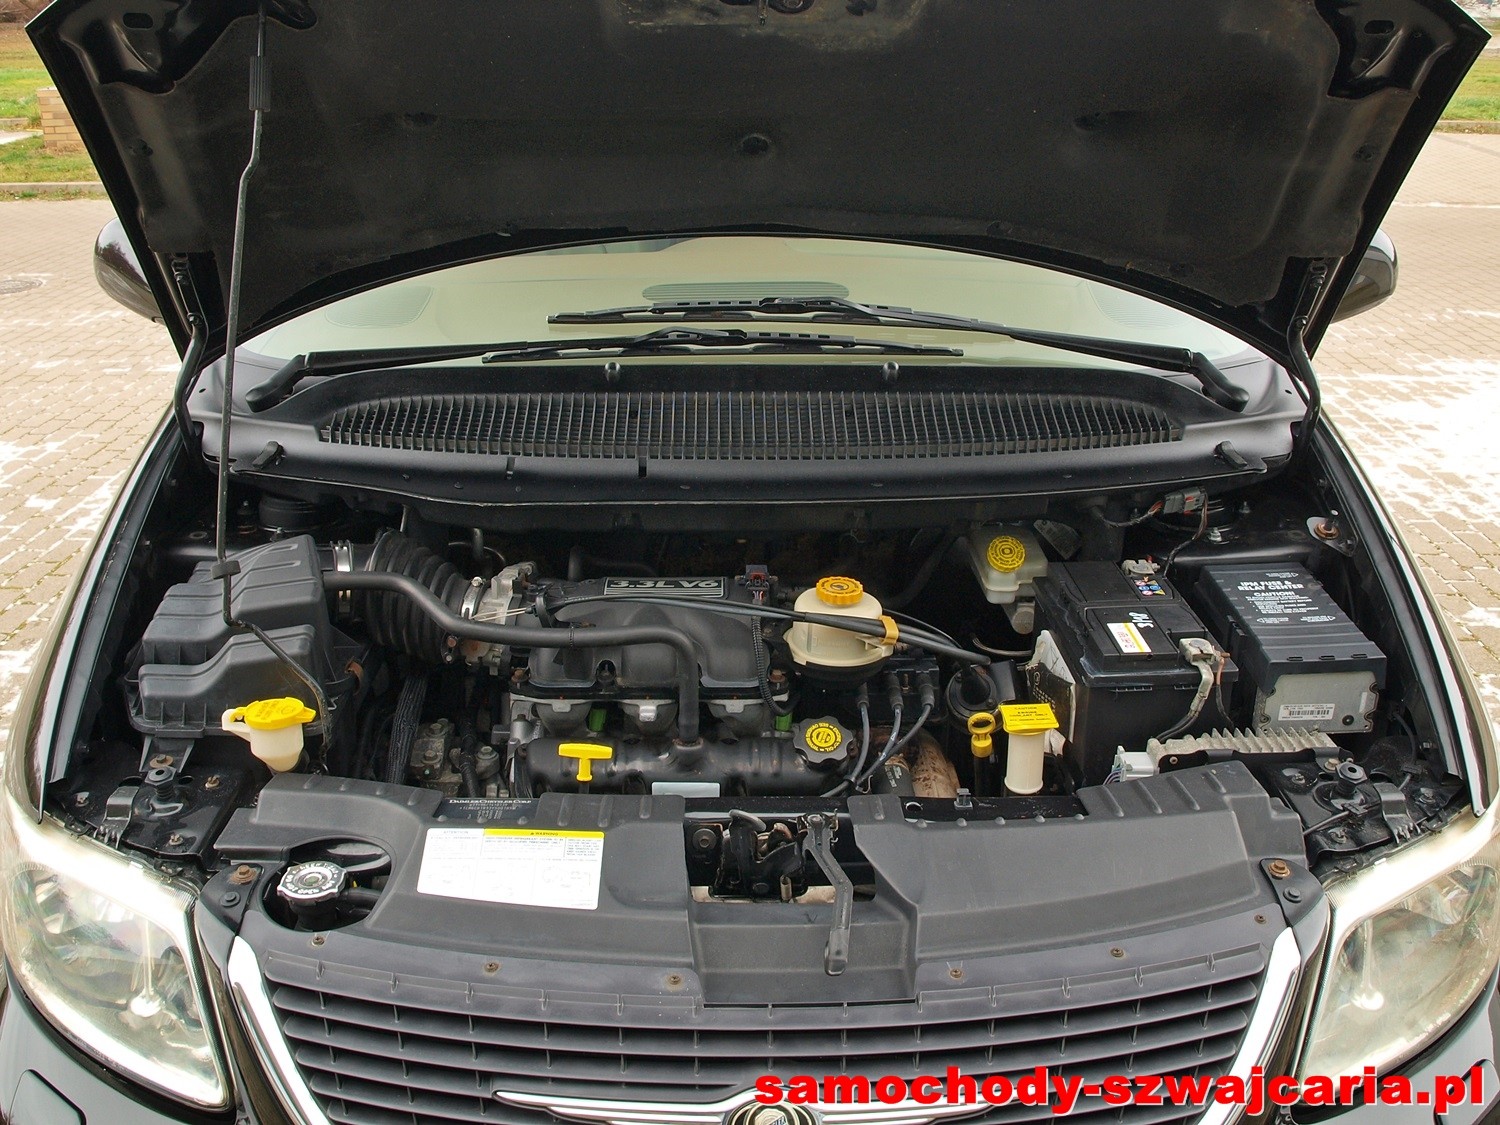 Chrysler Grand Voyager Limited AWD 3.3 V6 Samochody